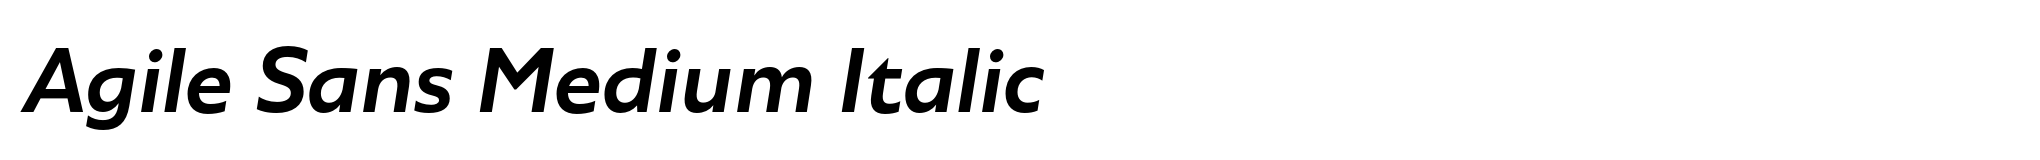 Agile Sans Medium Italic image